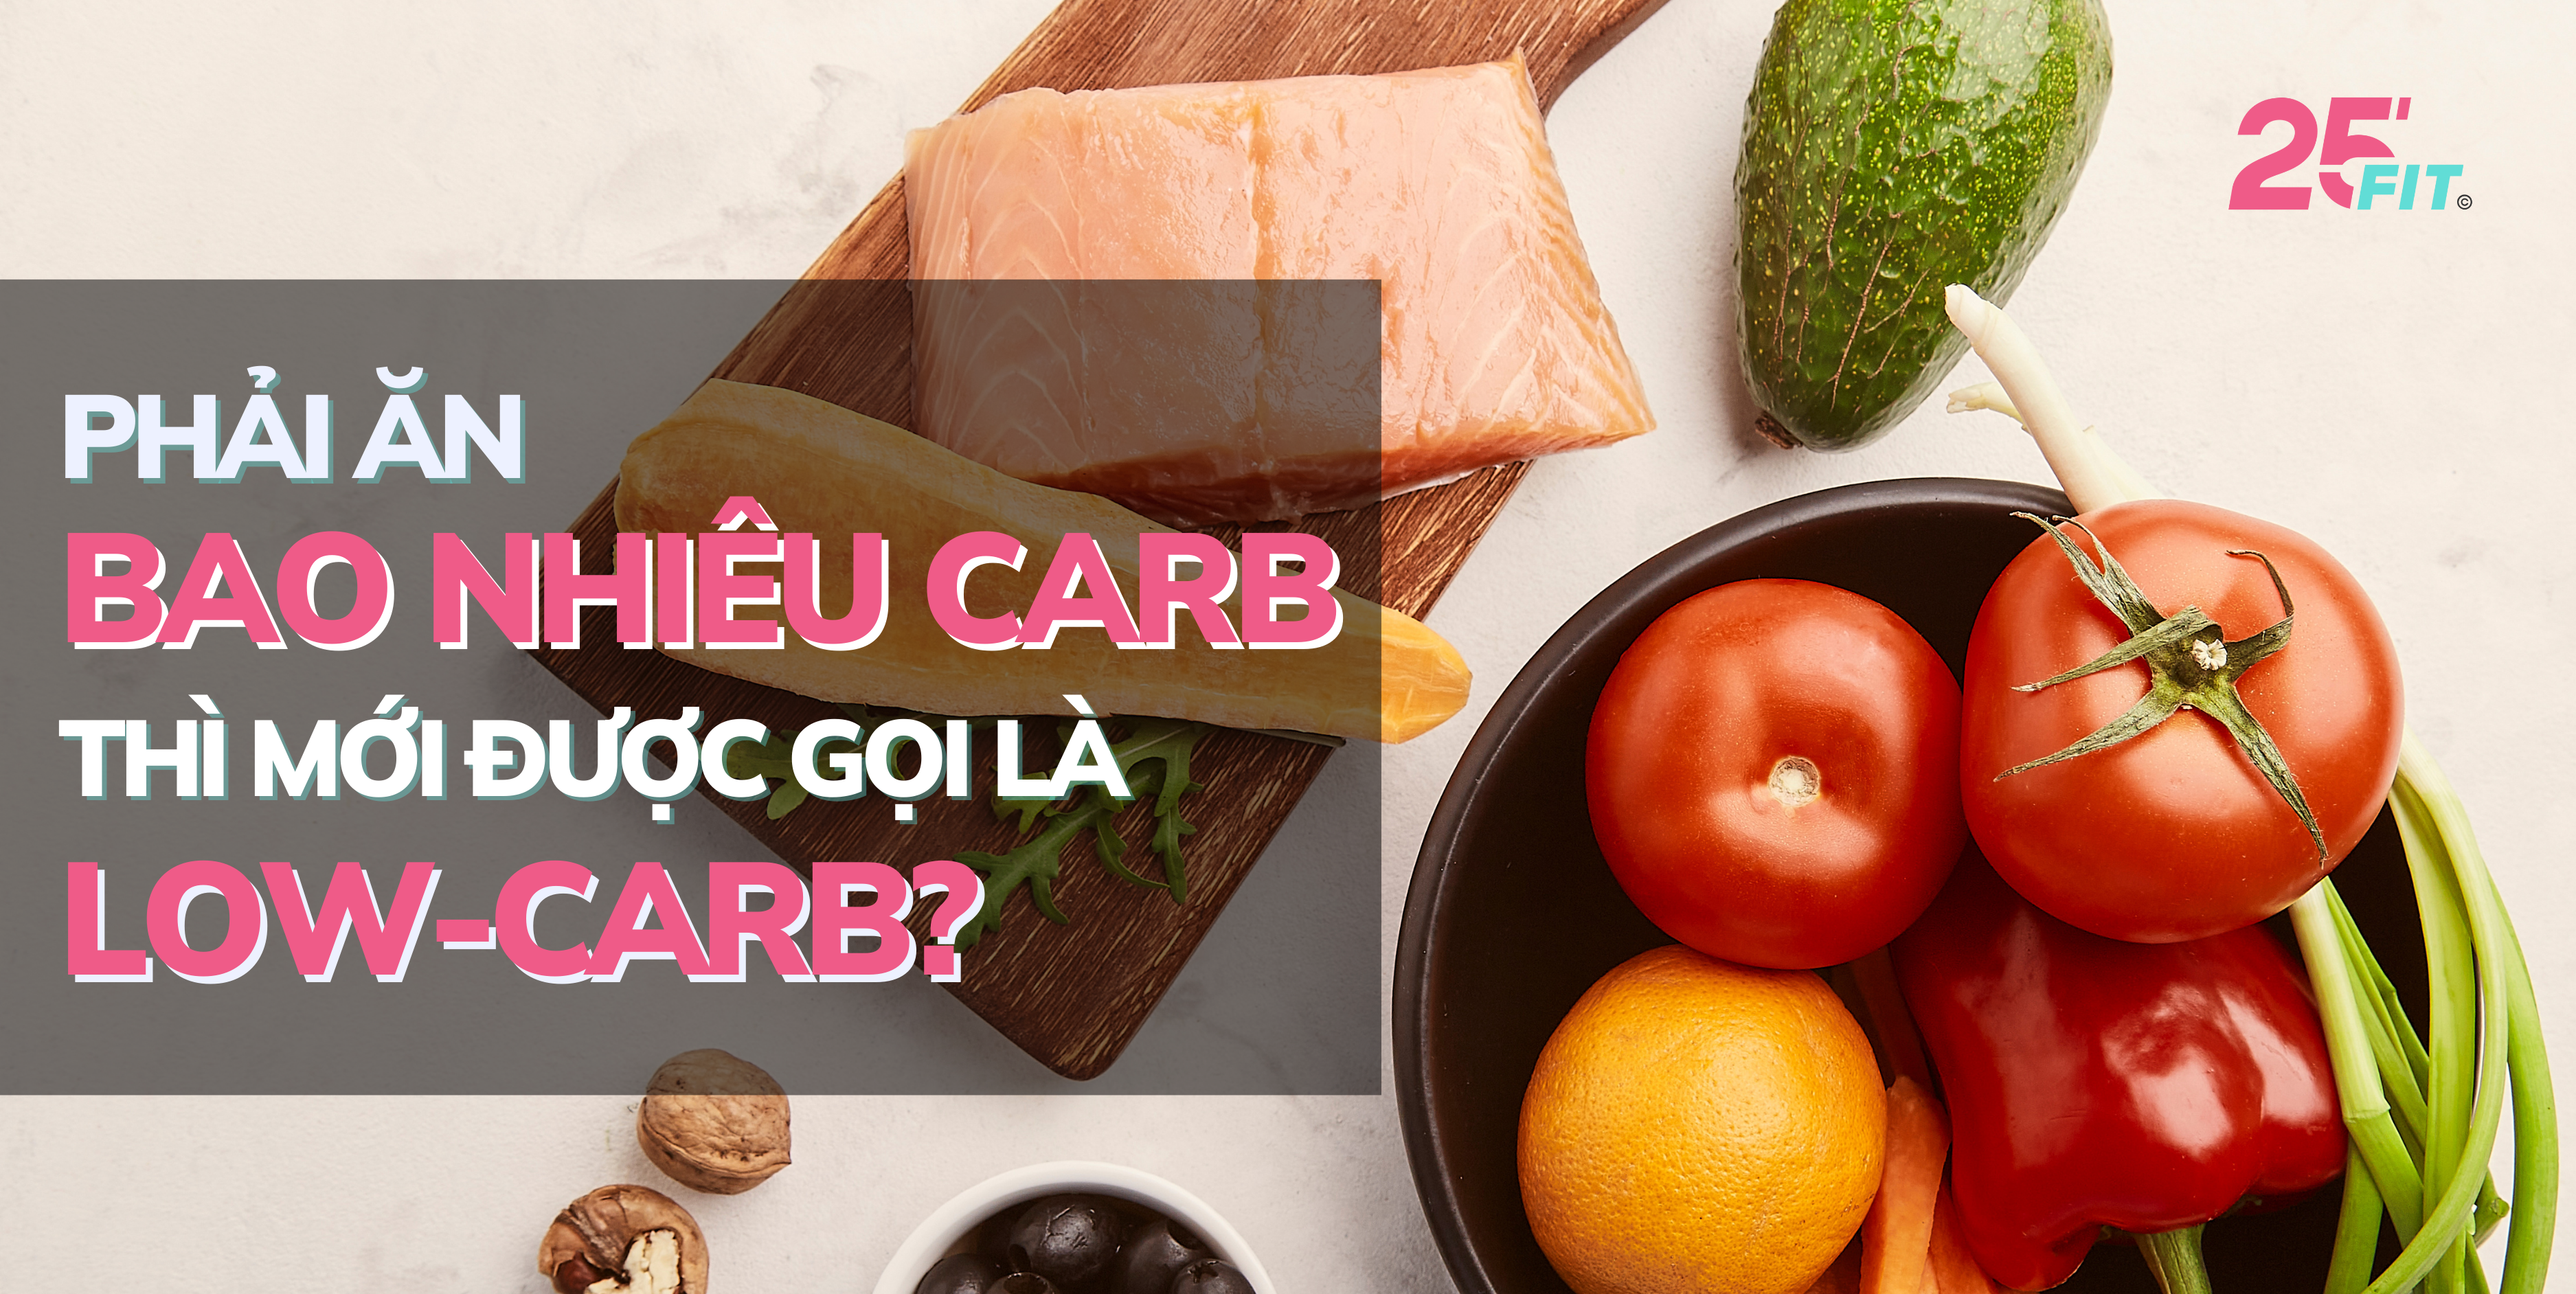 Phải ăn bao nhiêu carb thì mới được gọi là low-carb?